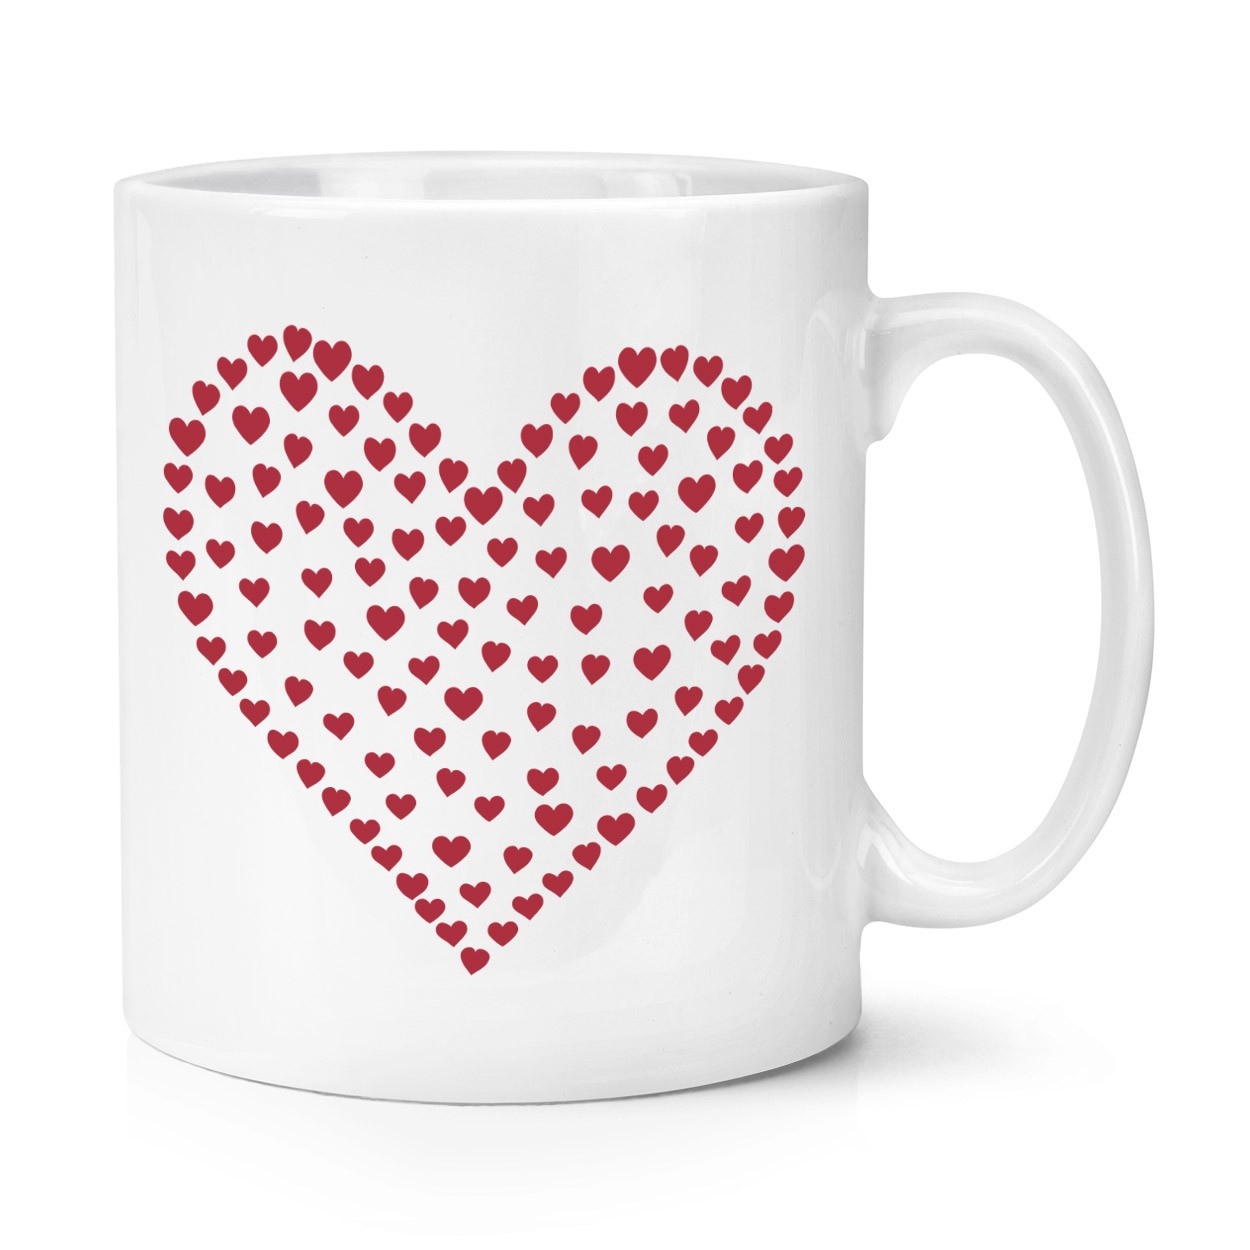 Heart Of Hearts 10oz Mug Cup